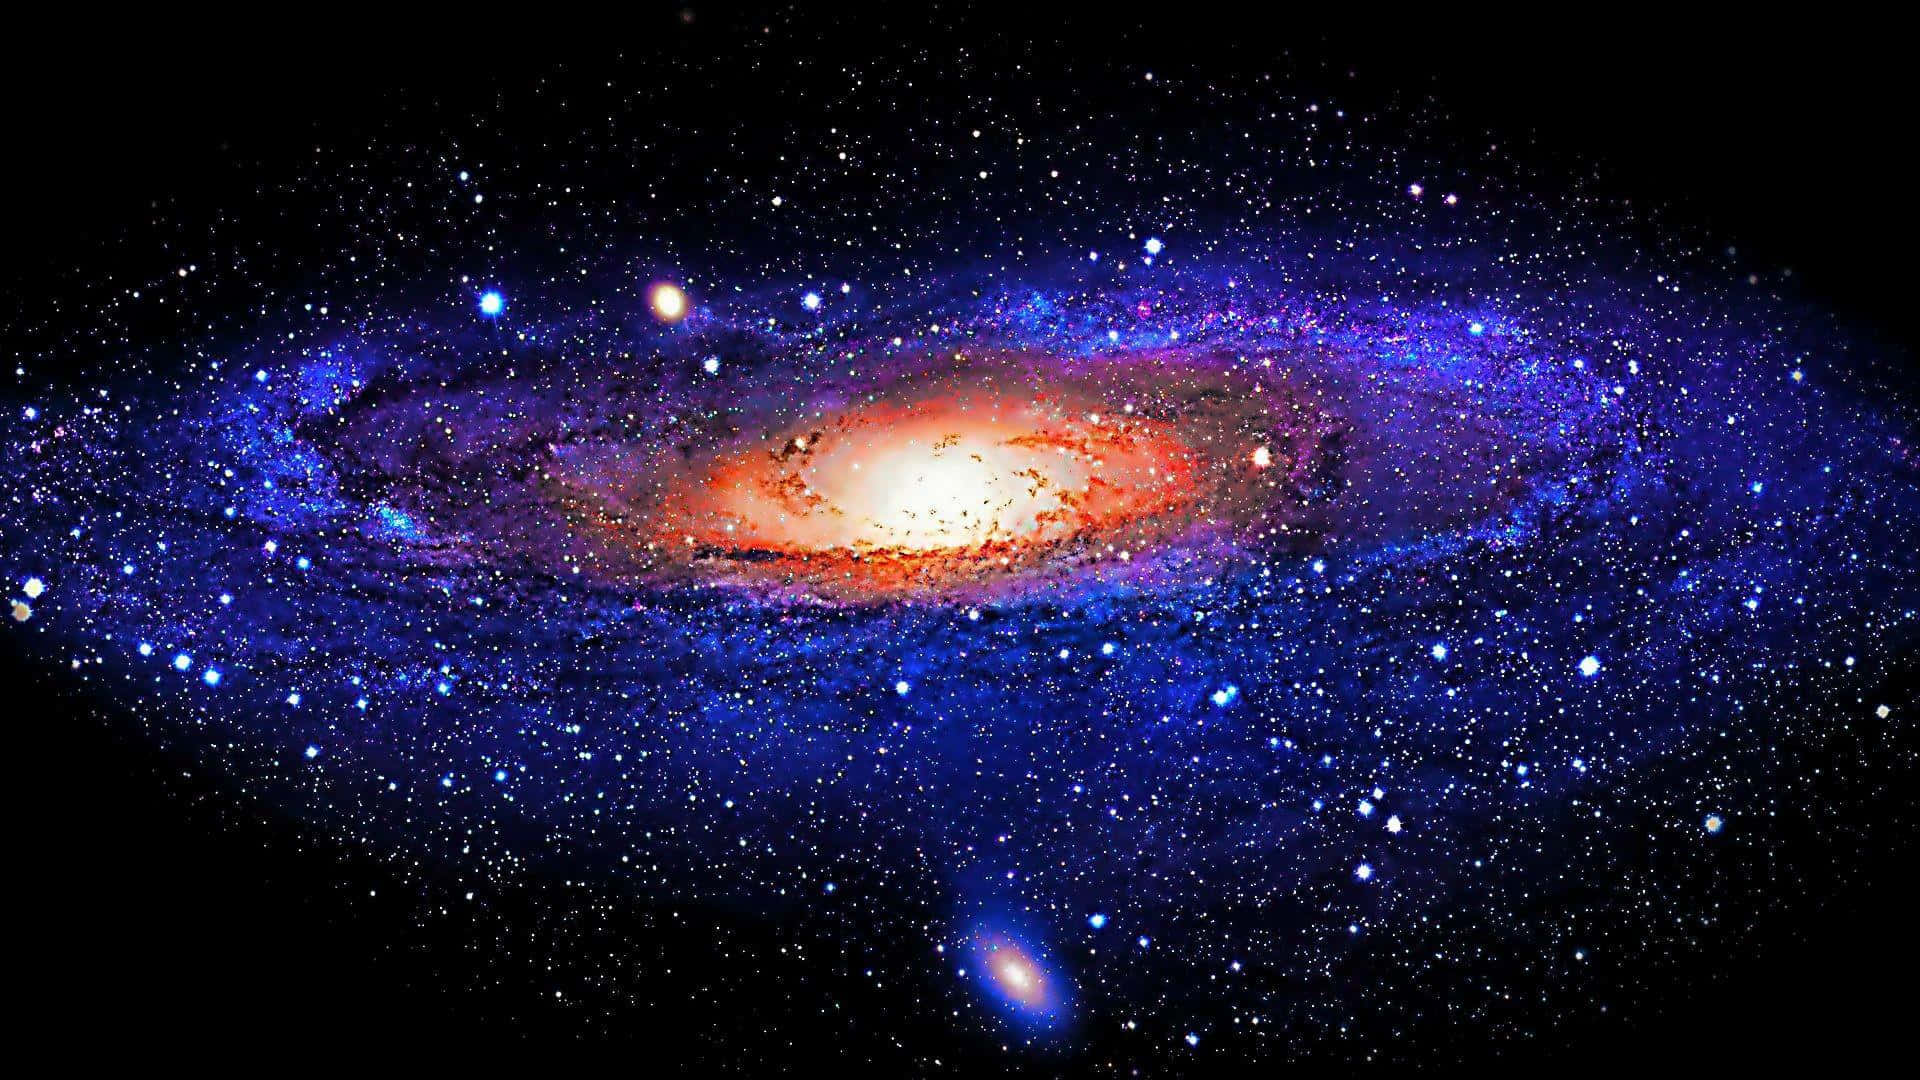 Unavista Espectacular De Una Supernova Galáctica, Una Estrella Deslumbrante Que Ha Estallado En El Cielo Nocturno.